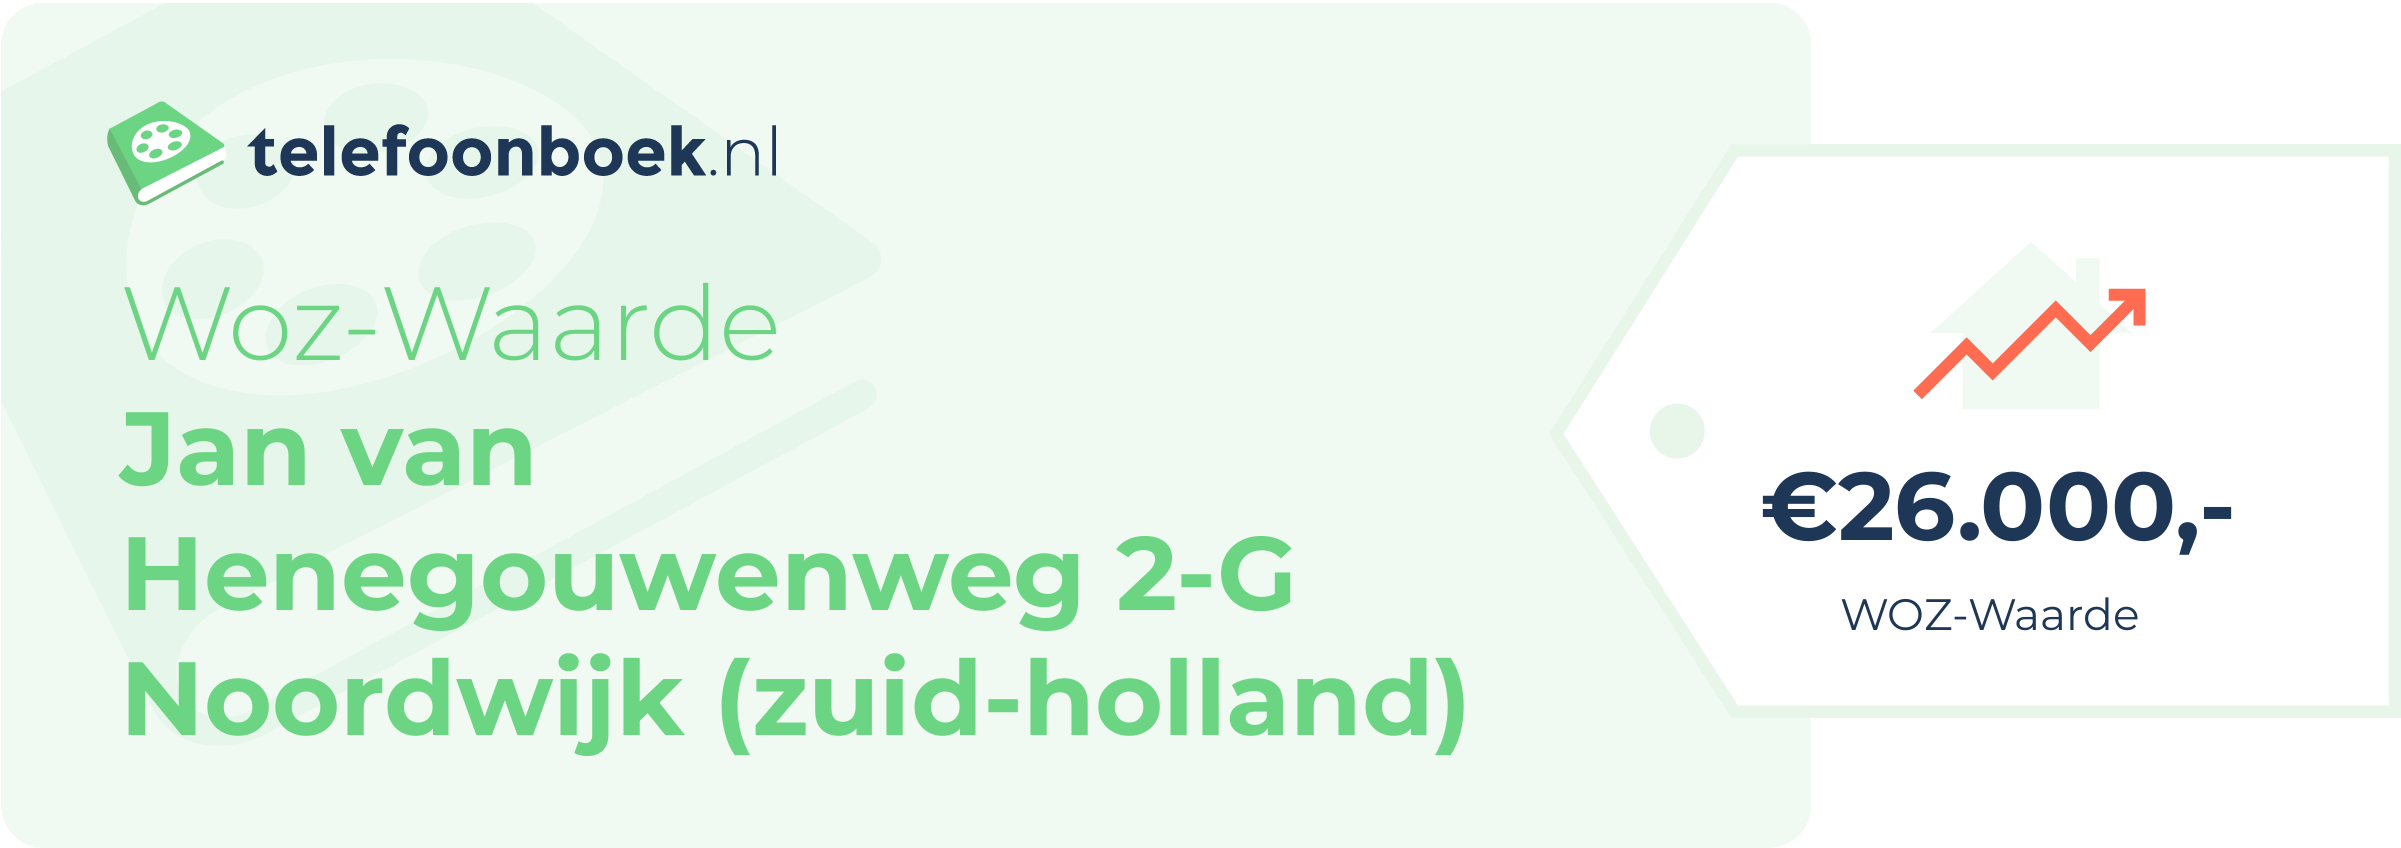 WOZ-waarde Jan Van Henegouwenweg 2-G Noordwijk (Zuid-Holland)